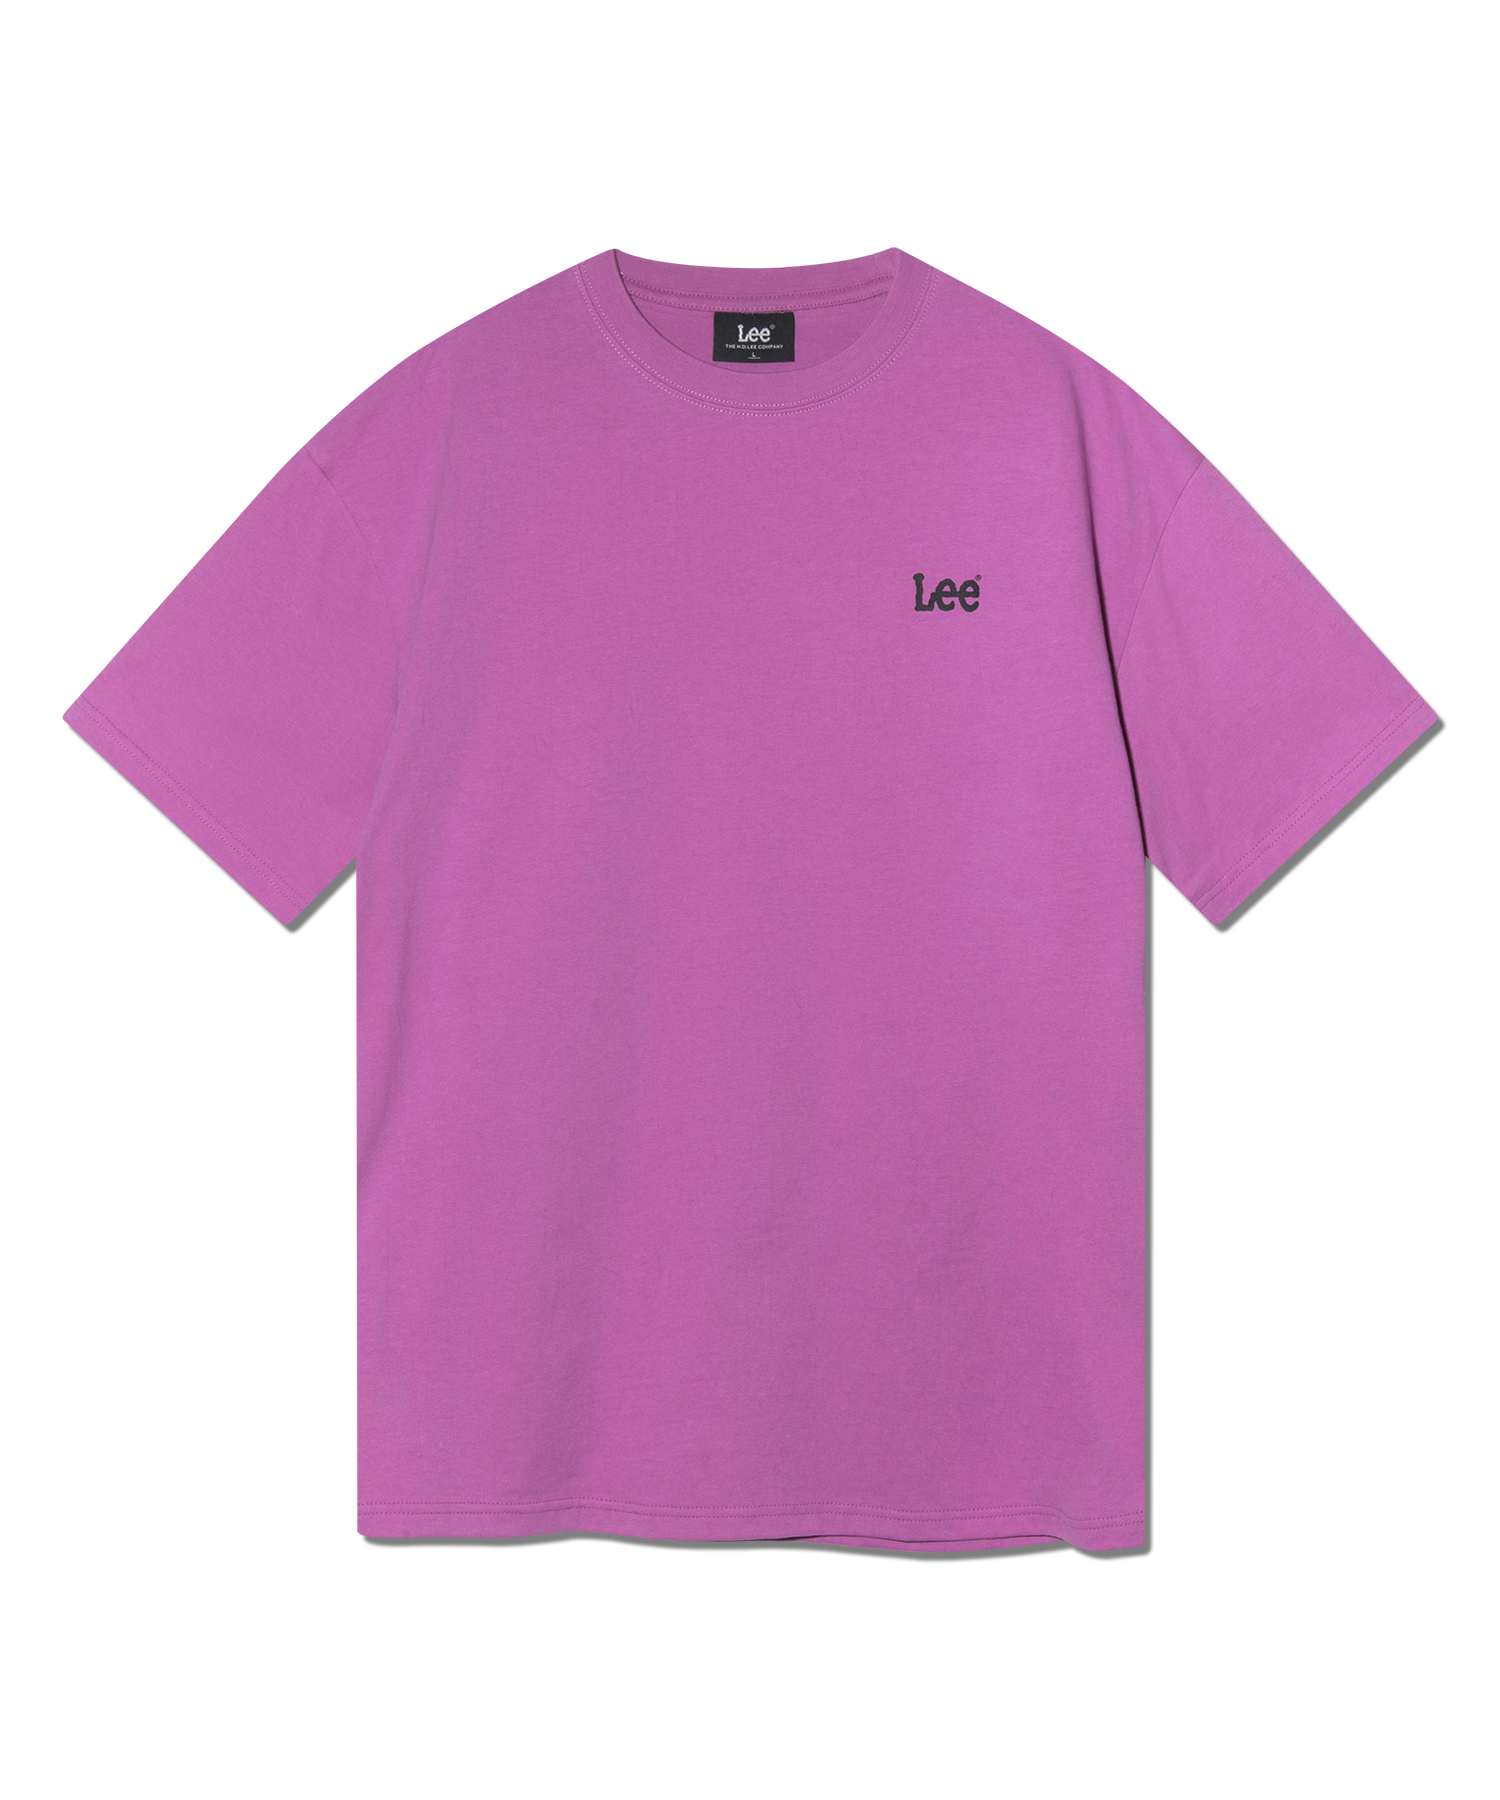 버디리 펑키디스코 티셔츠 핑크